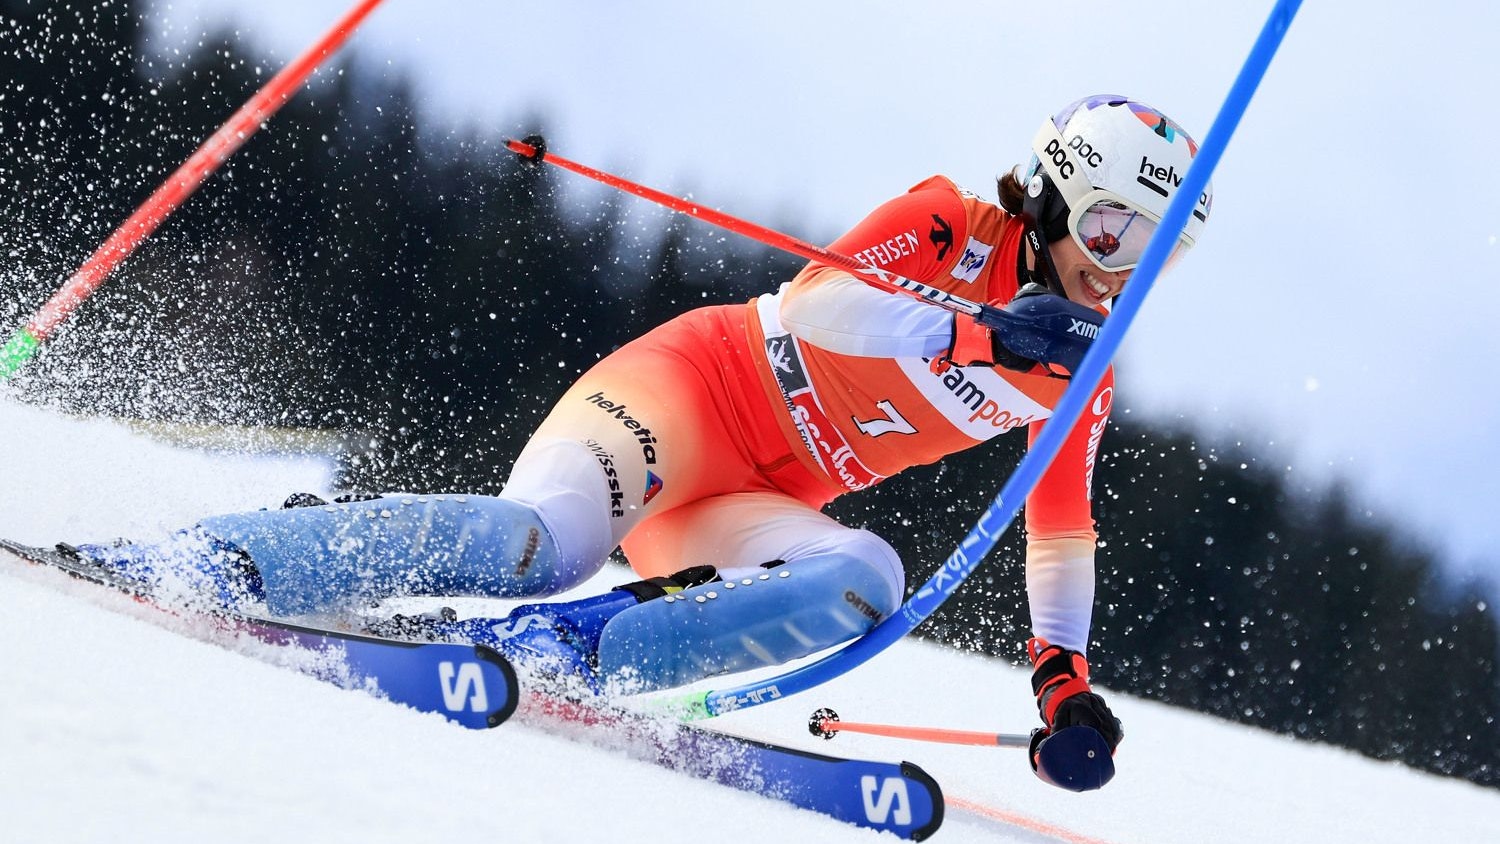 ski-star bremst absichtlich, schenkt gold-medaille her